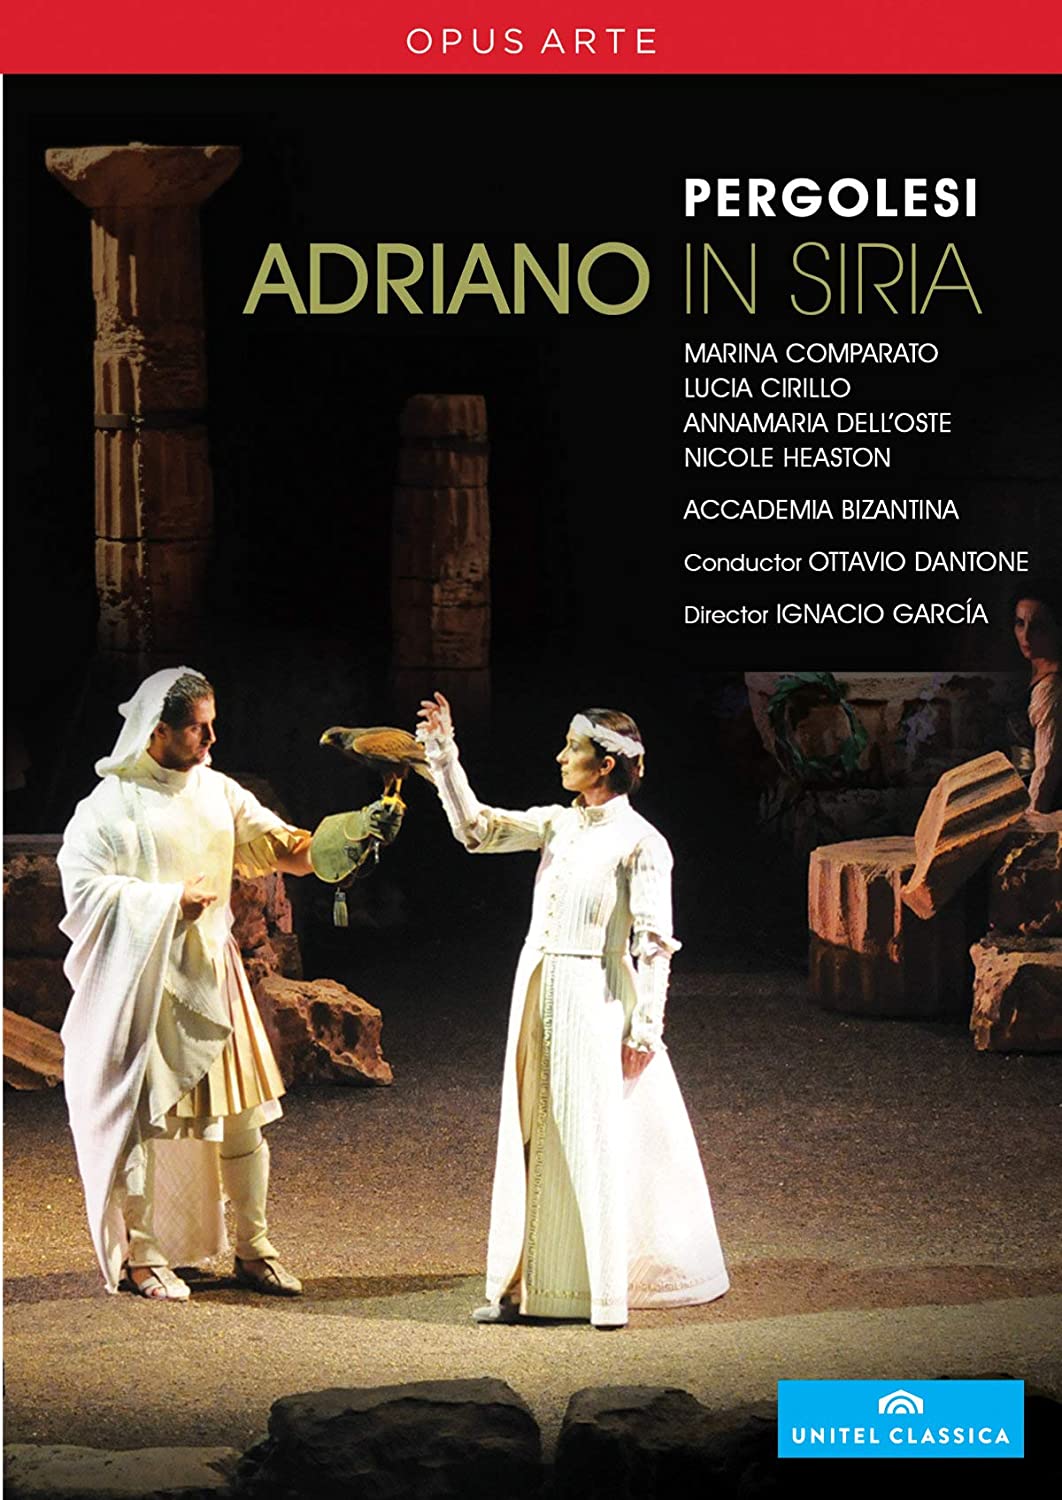 PERGOLESI: Adriano in Siria - Pergolesi Spring Festival (2 DVD)